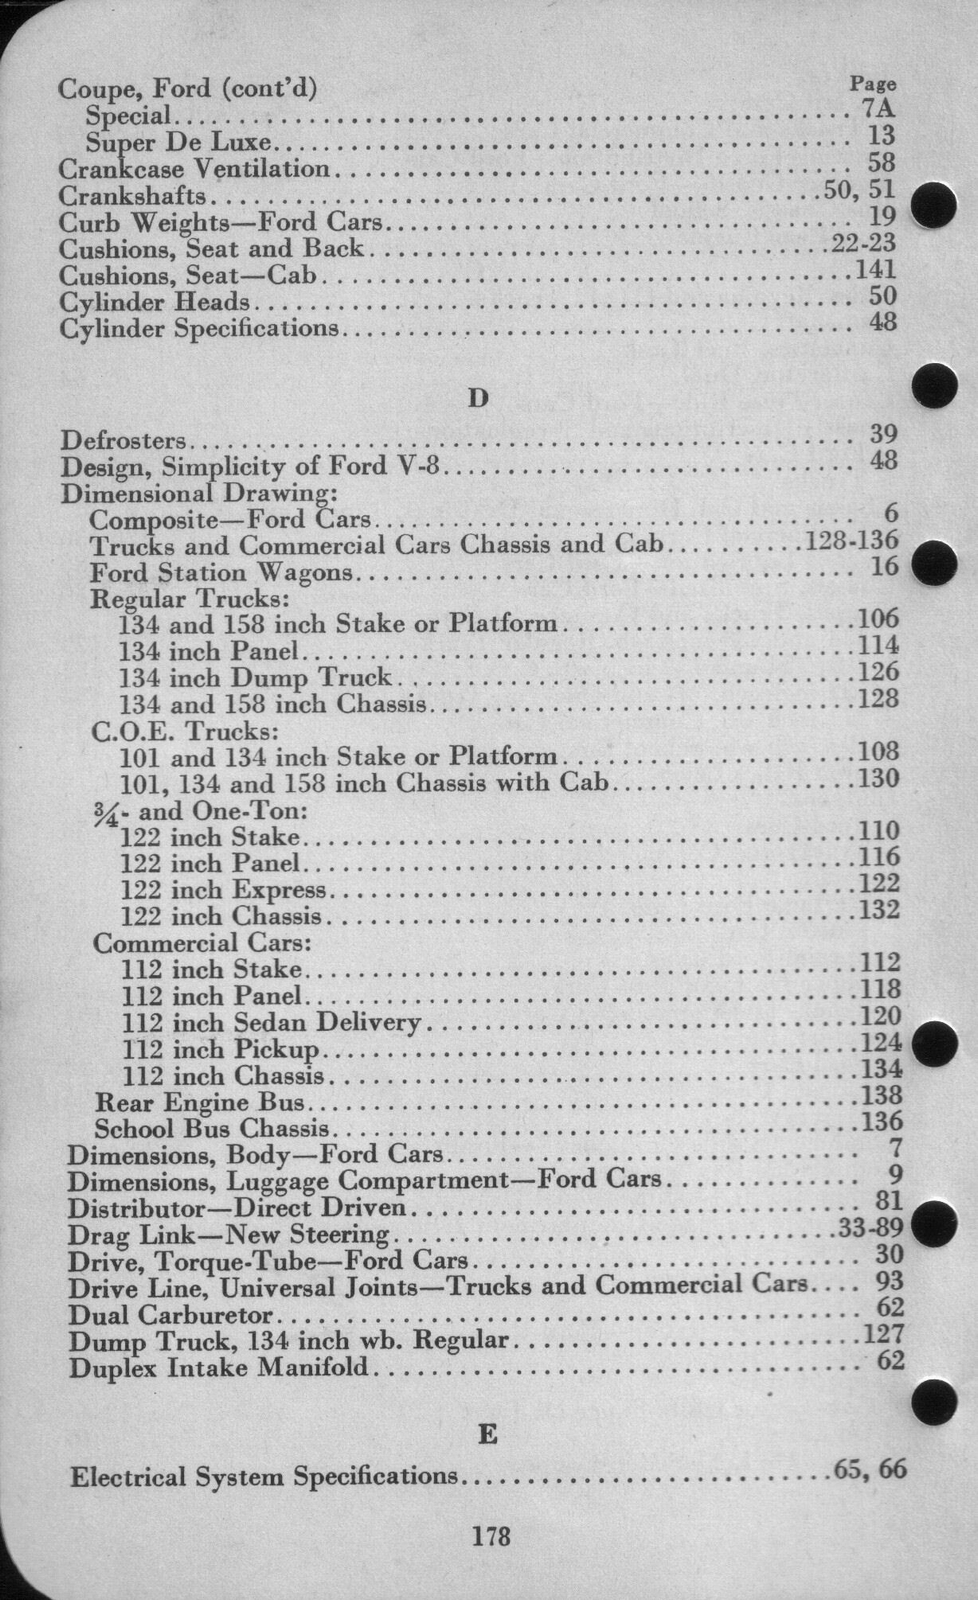 n_1942 Ford Salesmans Reference Manual-178.jpg